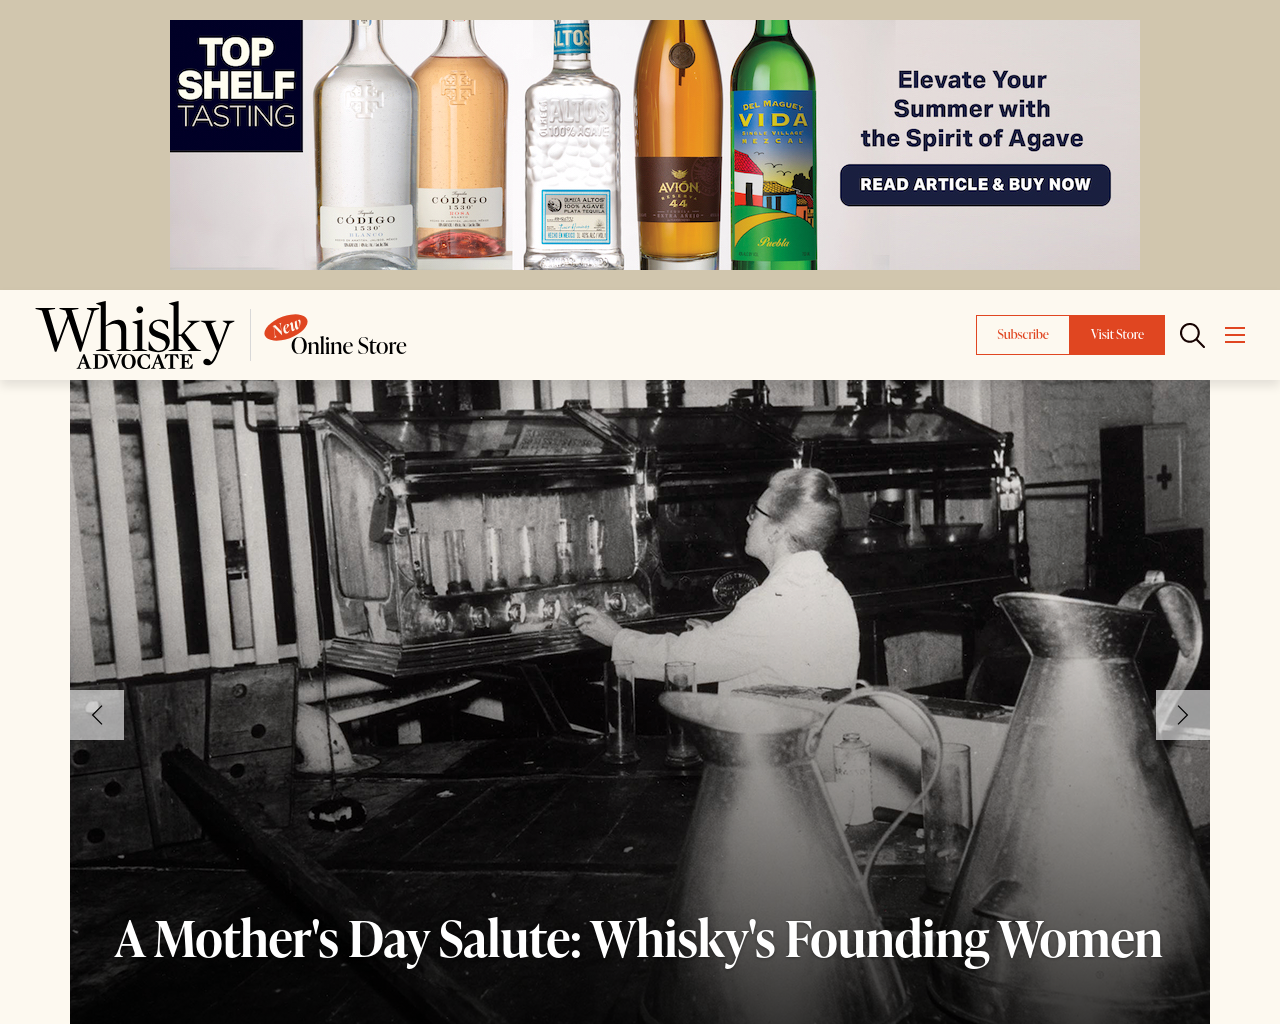 whiskyadvocate.com